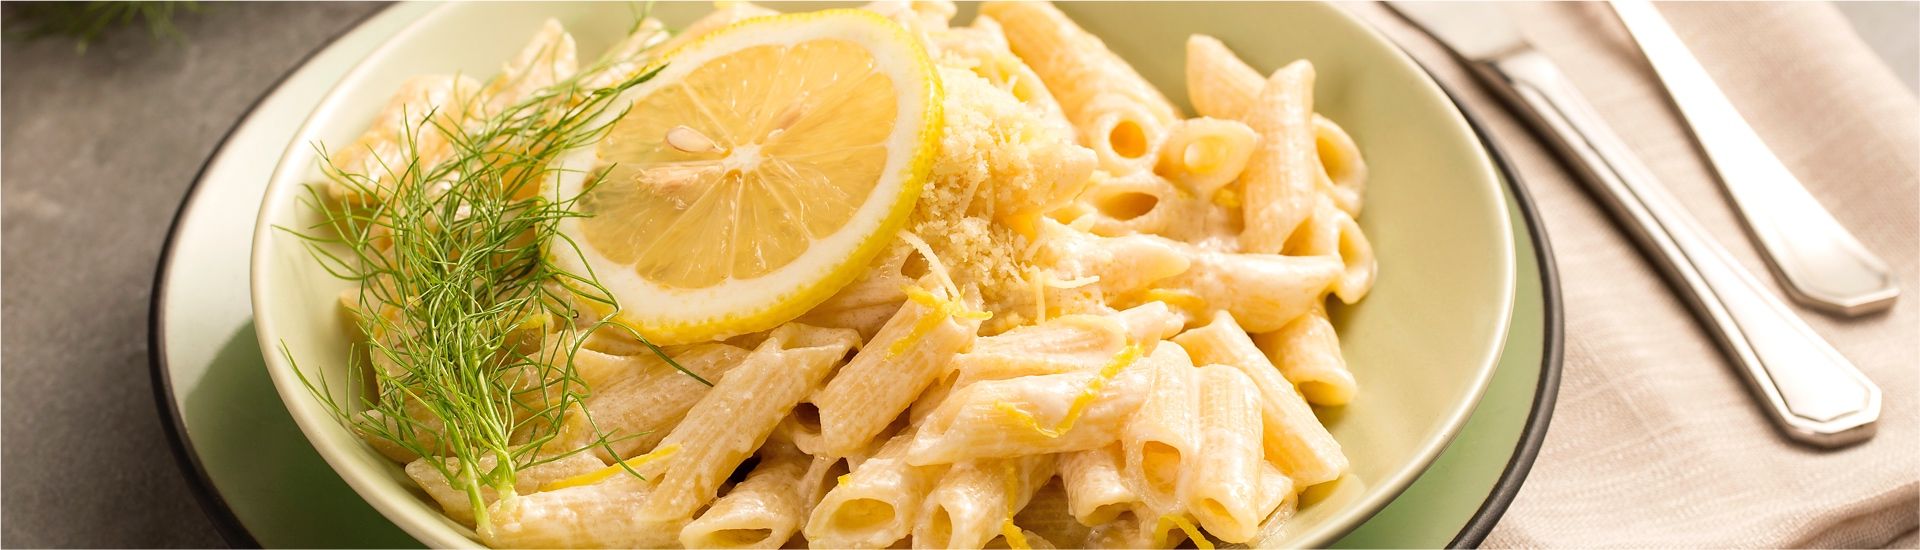 Macarrão com molho de limão siciliano